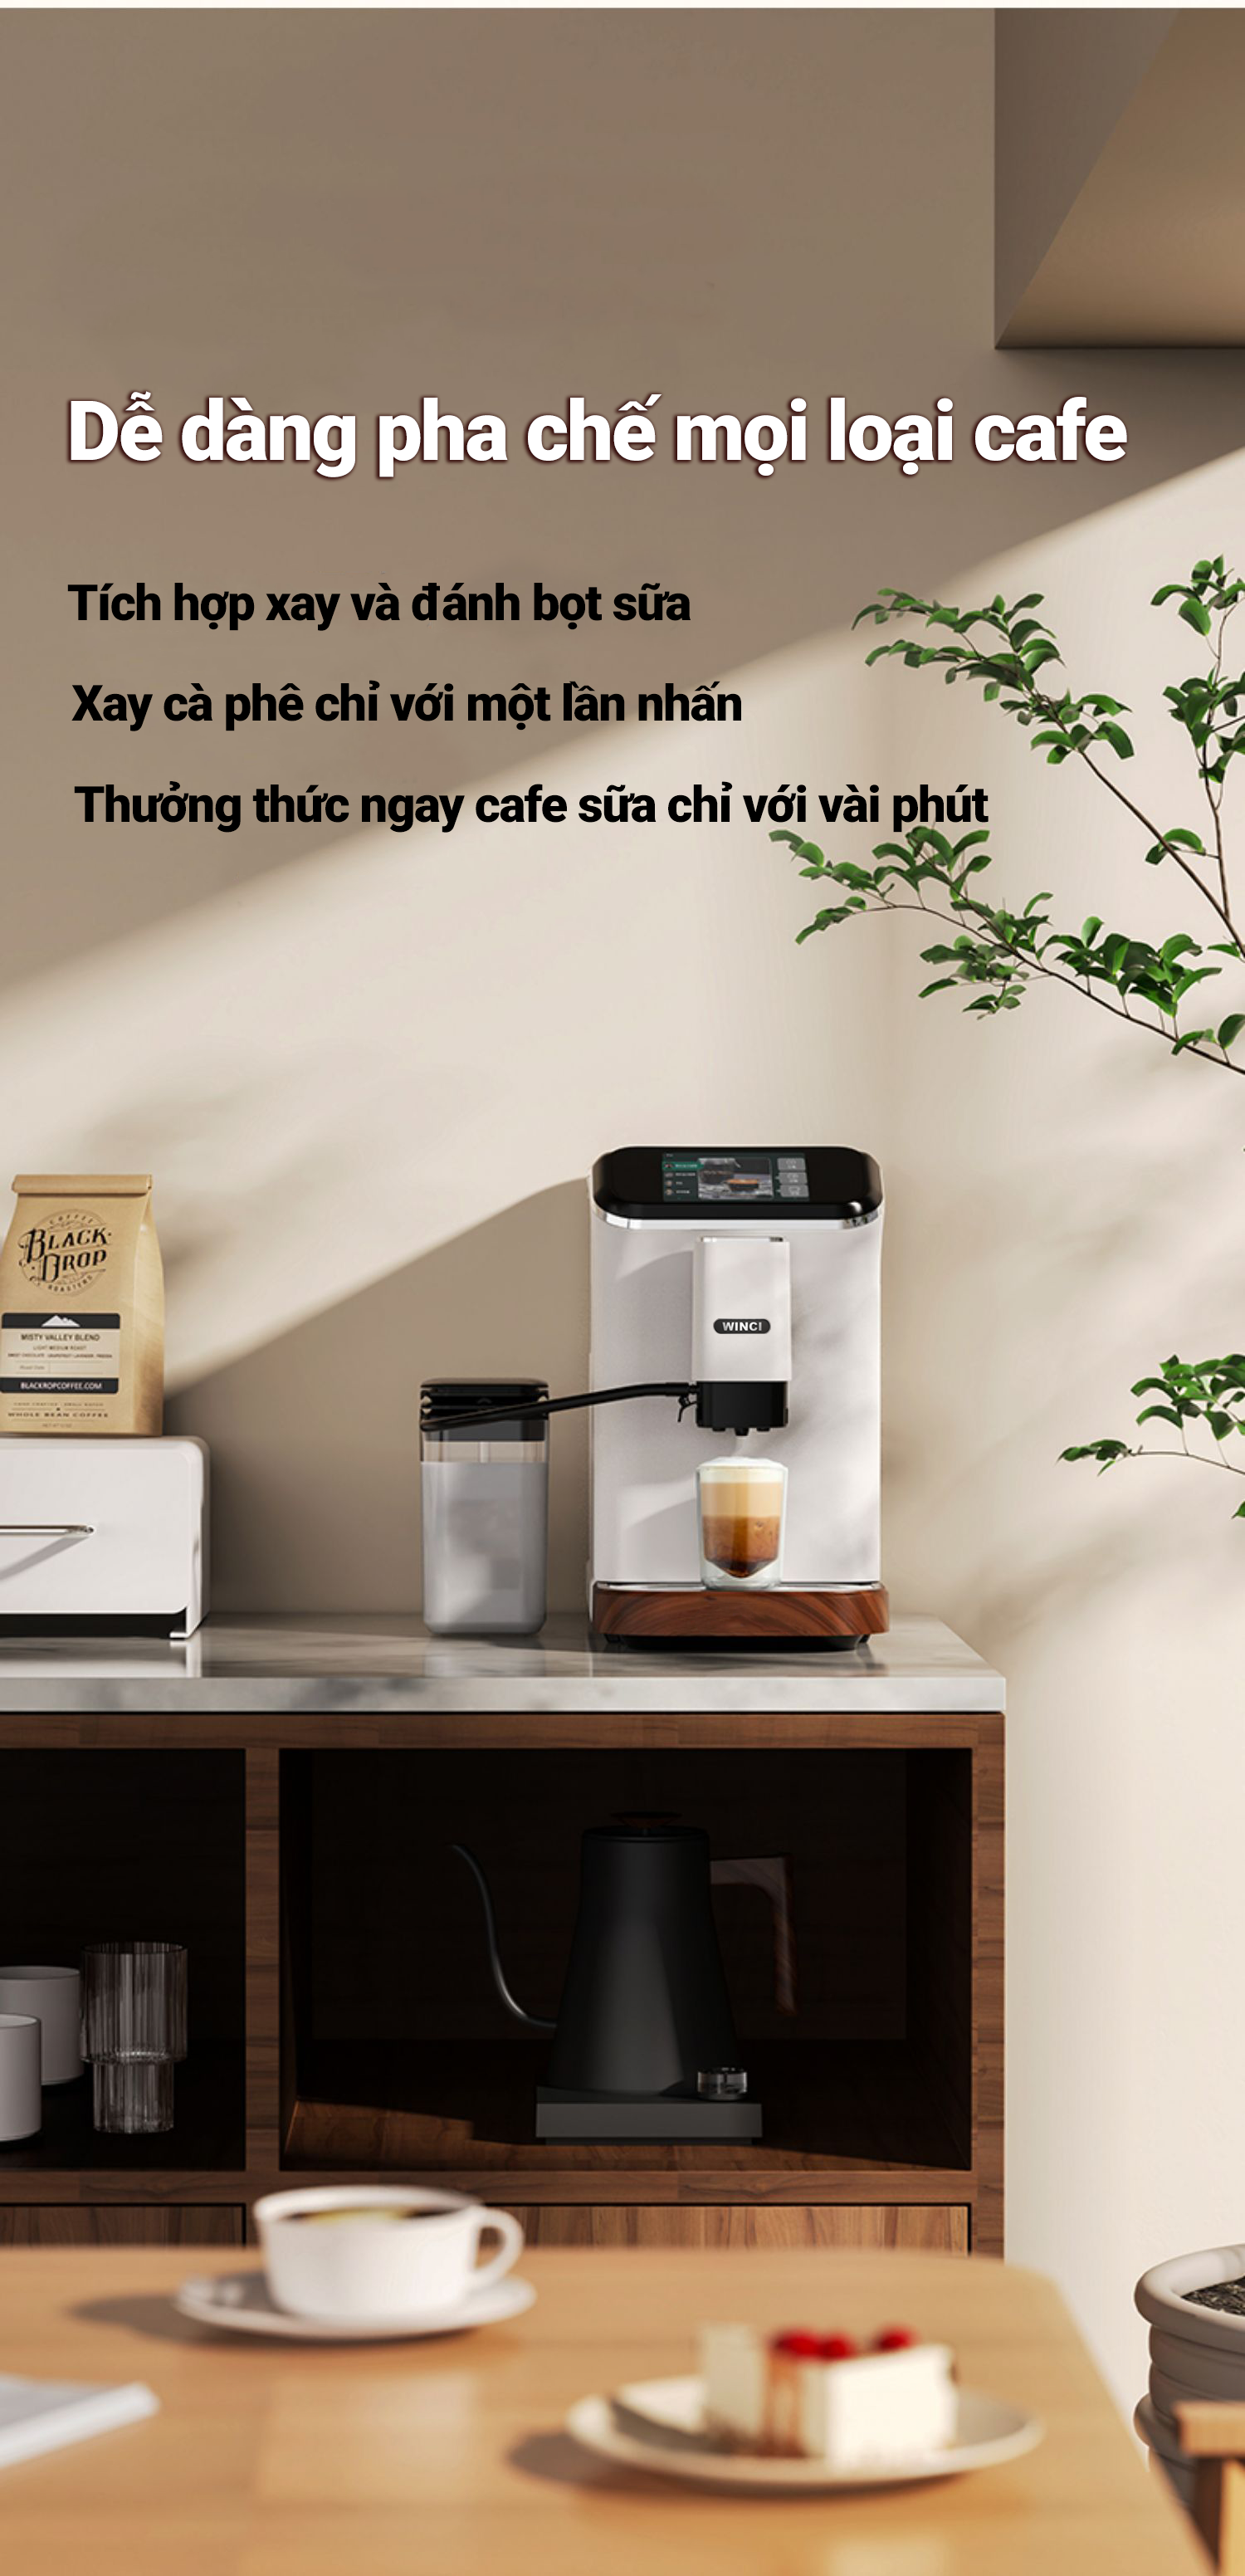 Dễ dàng pha chế mọi loại cafe với máy pha cà phê Winci EM64